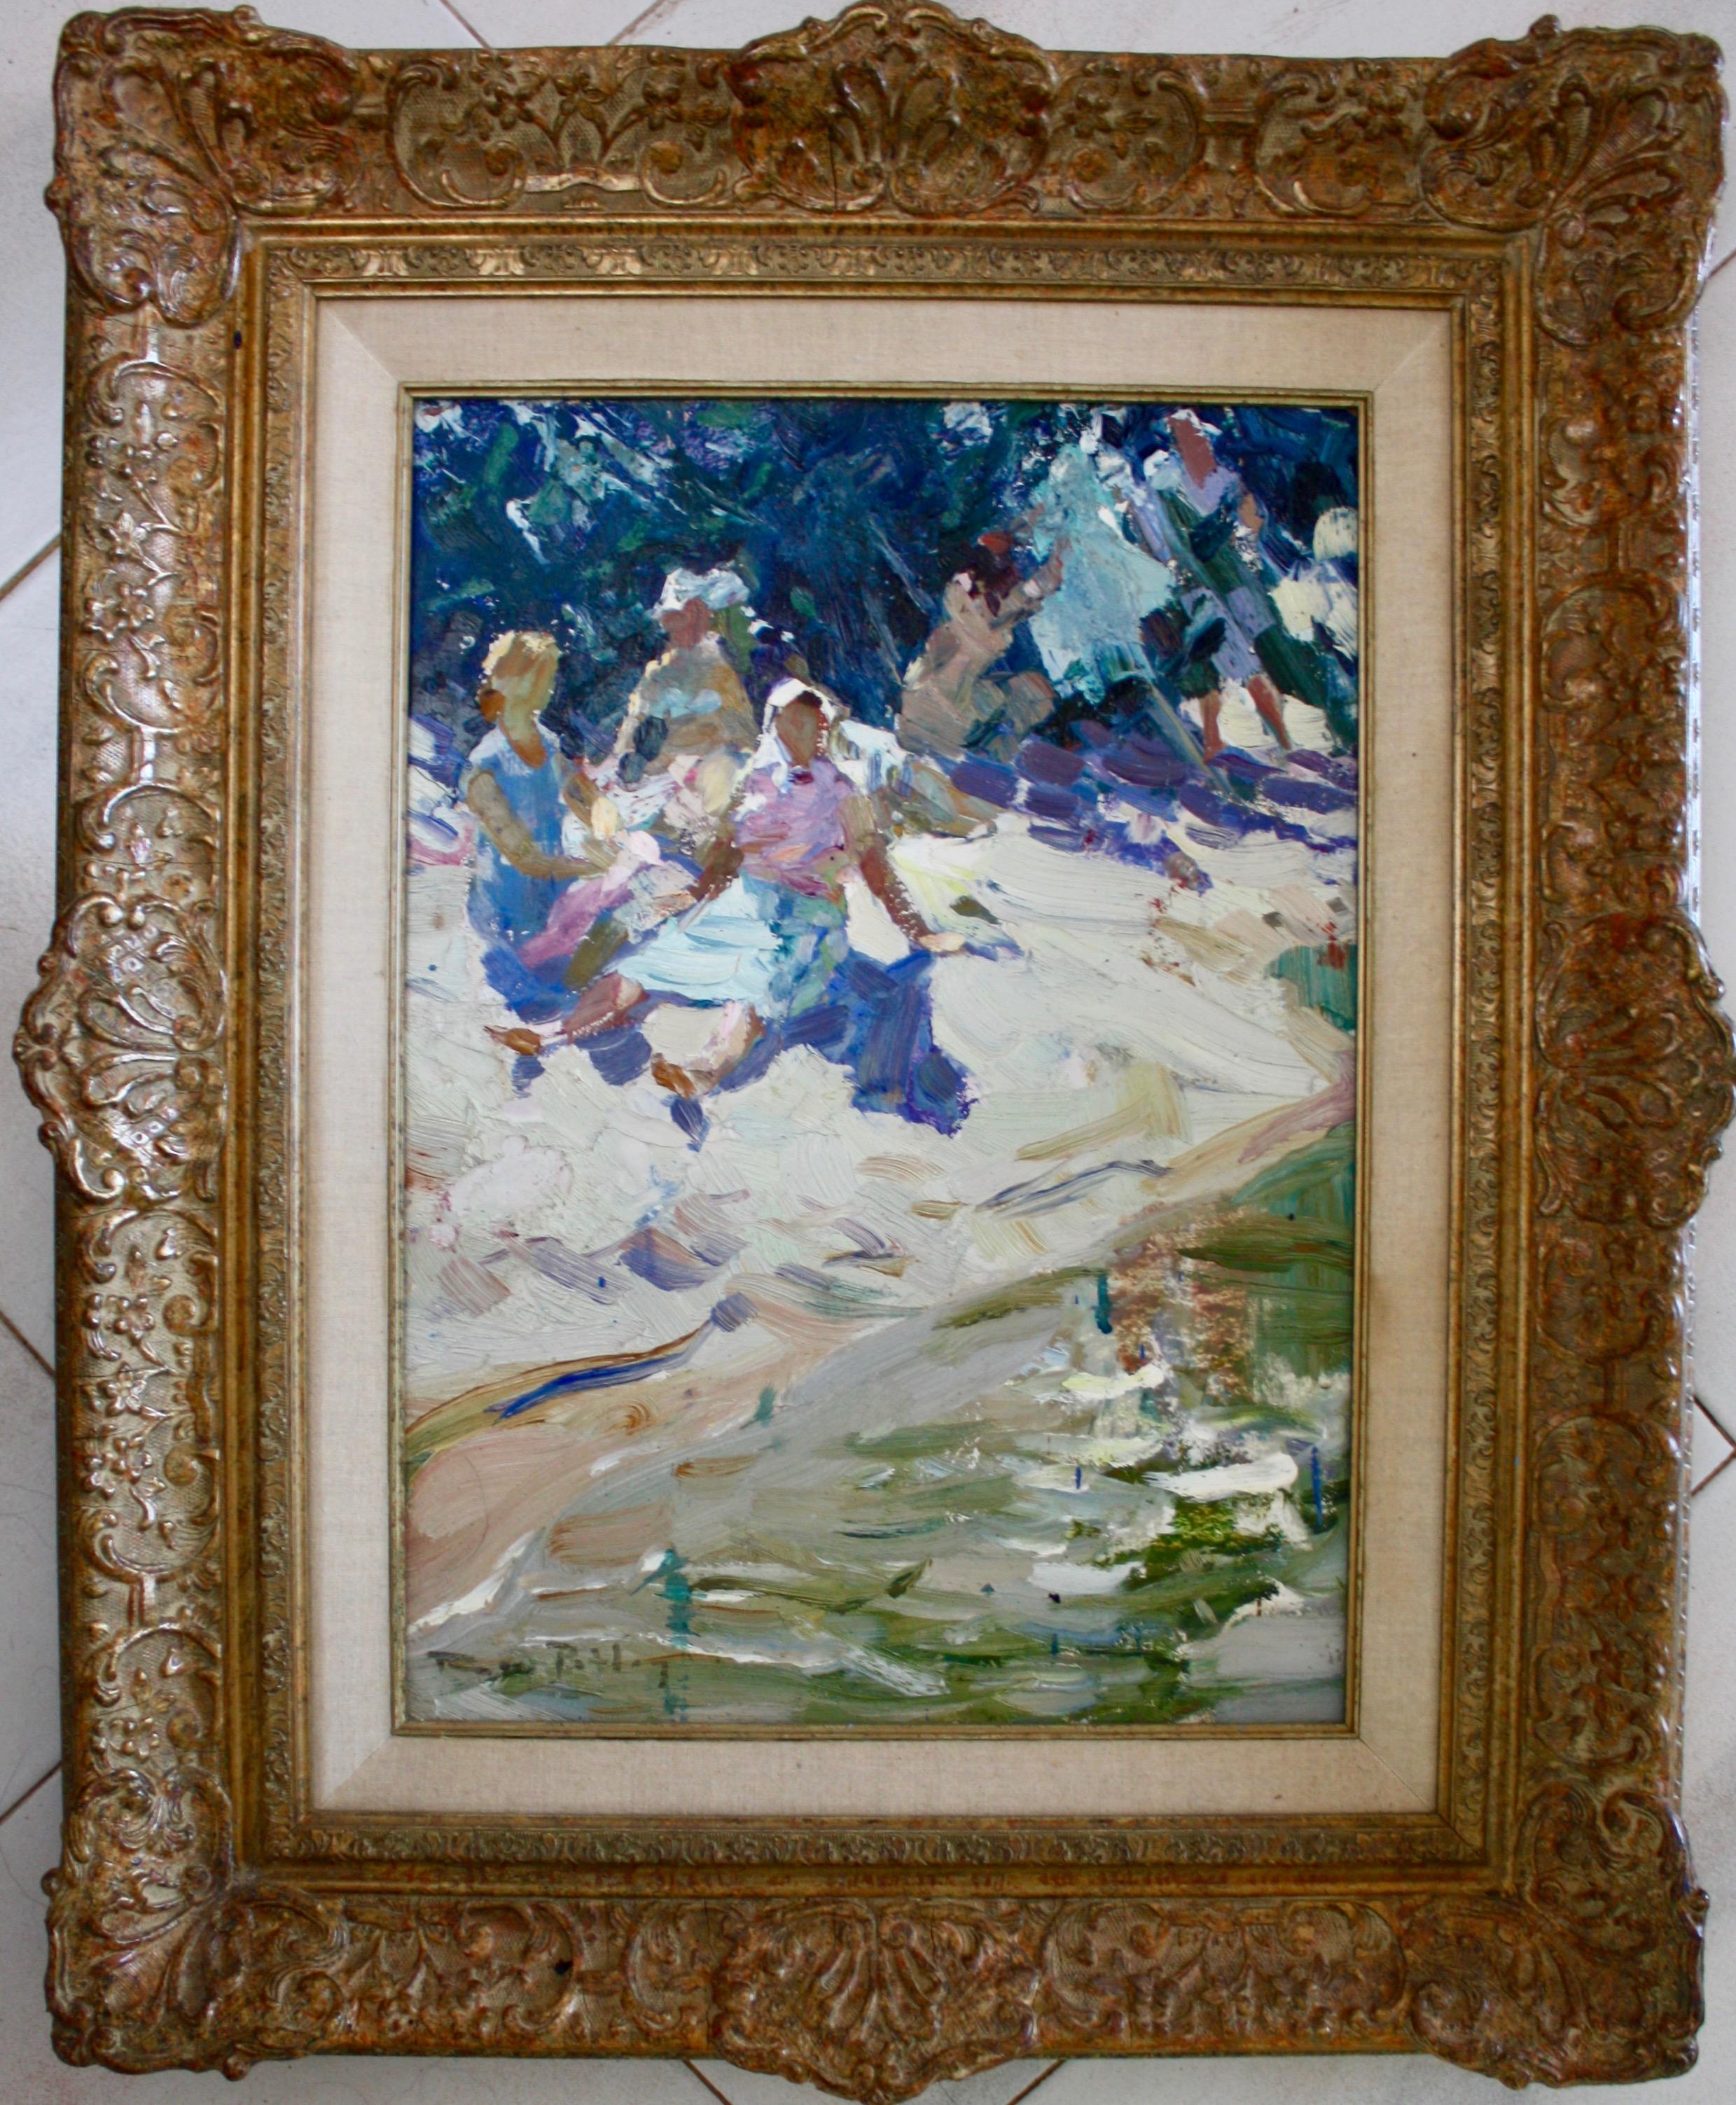 Roy Petley (né le 3 avril 1950) peint en plein air, une expression française qui signifie "en plein air", pour créer ses œuvres populaires qui dépeignent les vastes étendues des plages anglaises et la douce allure des paysages vénitiens. Ses œuvres